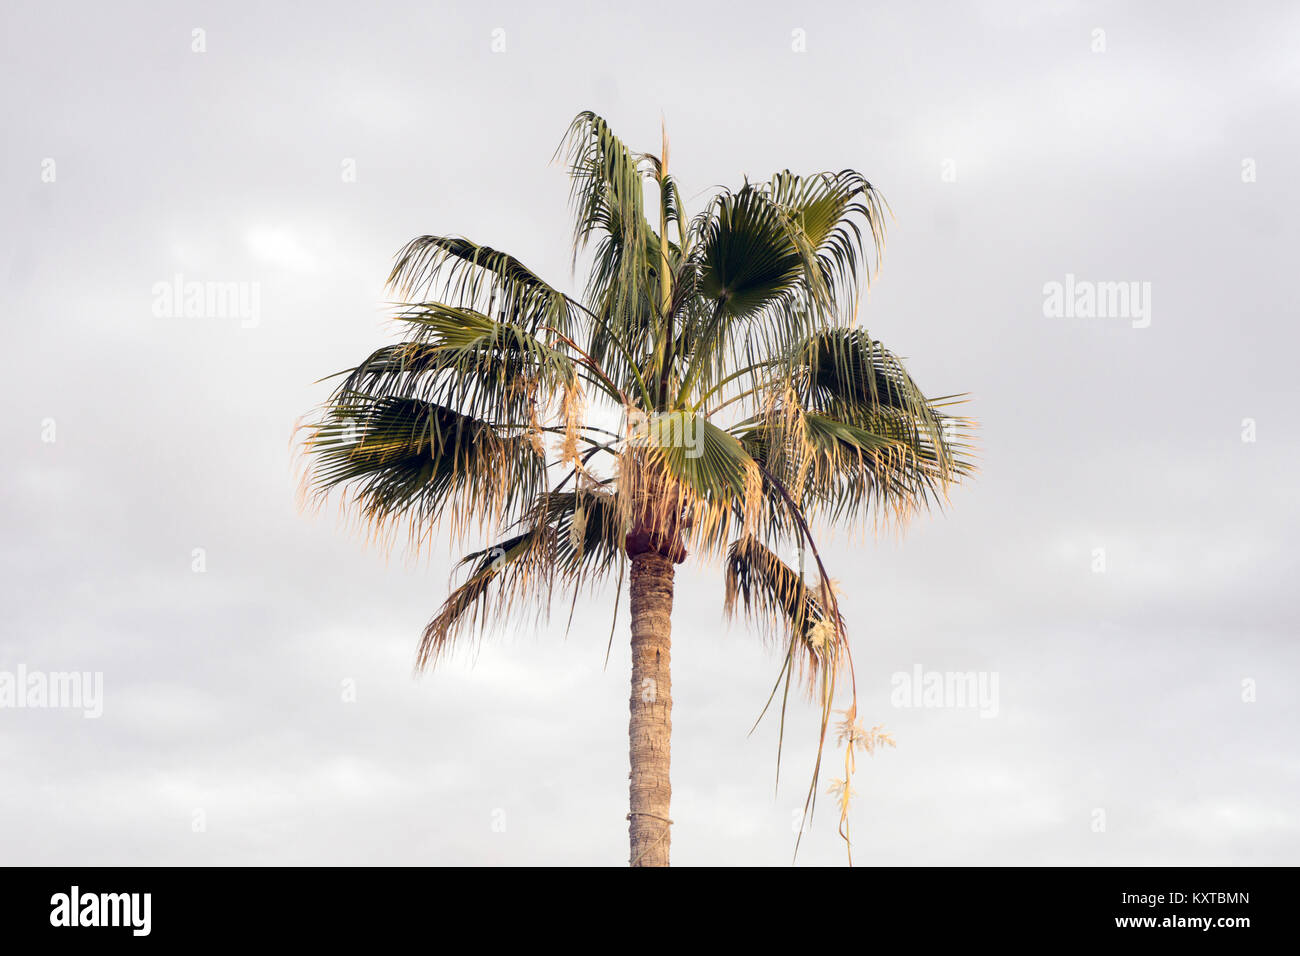 Lone Palm tree Brahea elegans tronco & ventola fronde sagomato illuminata dal sole di setting a Posada beach affacciato sul mare di Cortez San Carlos Sonora membro Messico Foto Stock